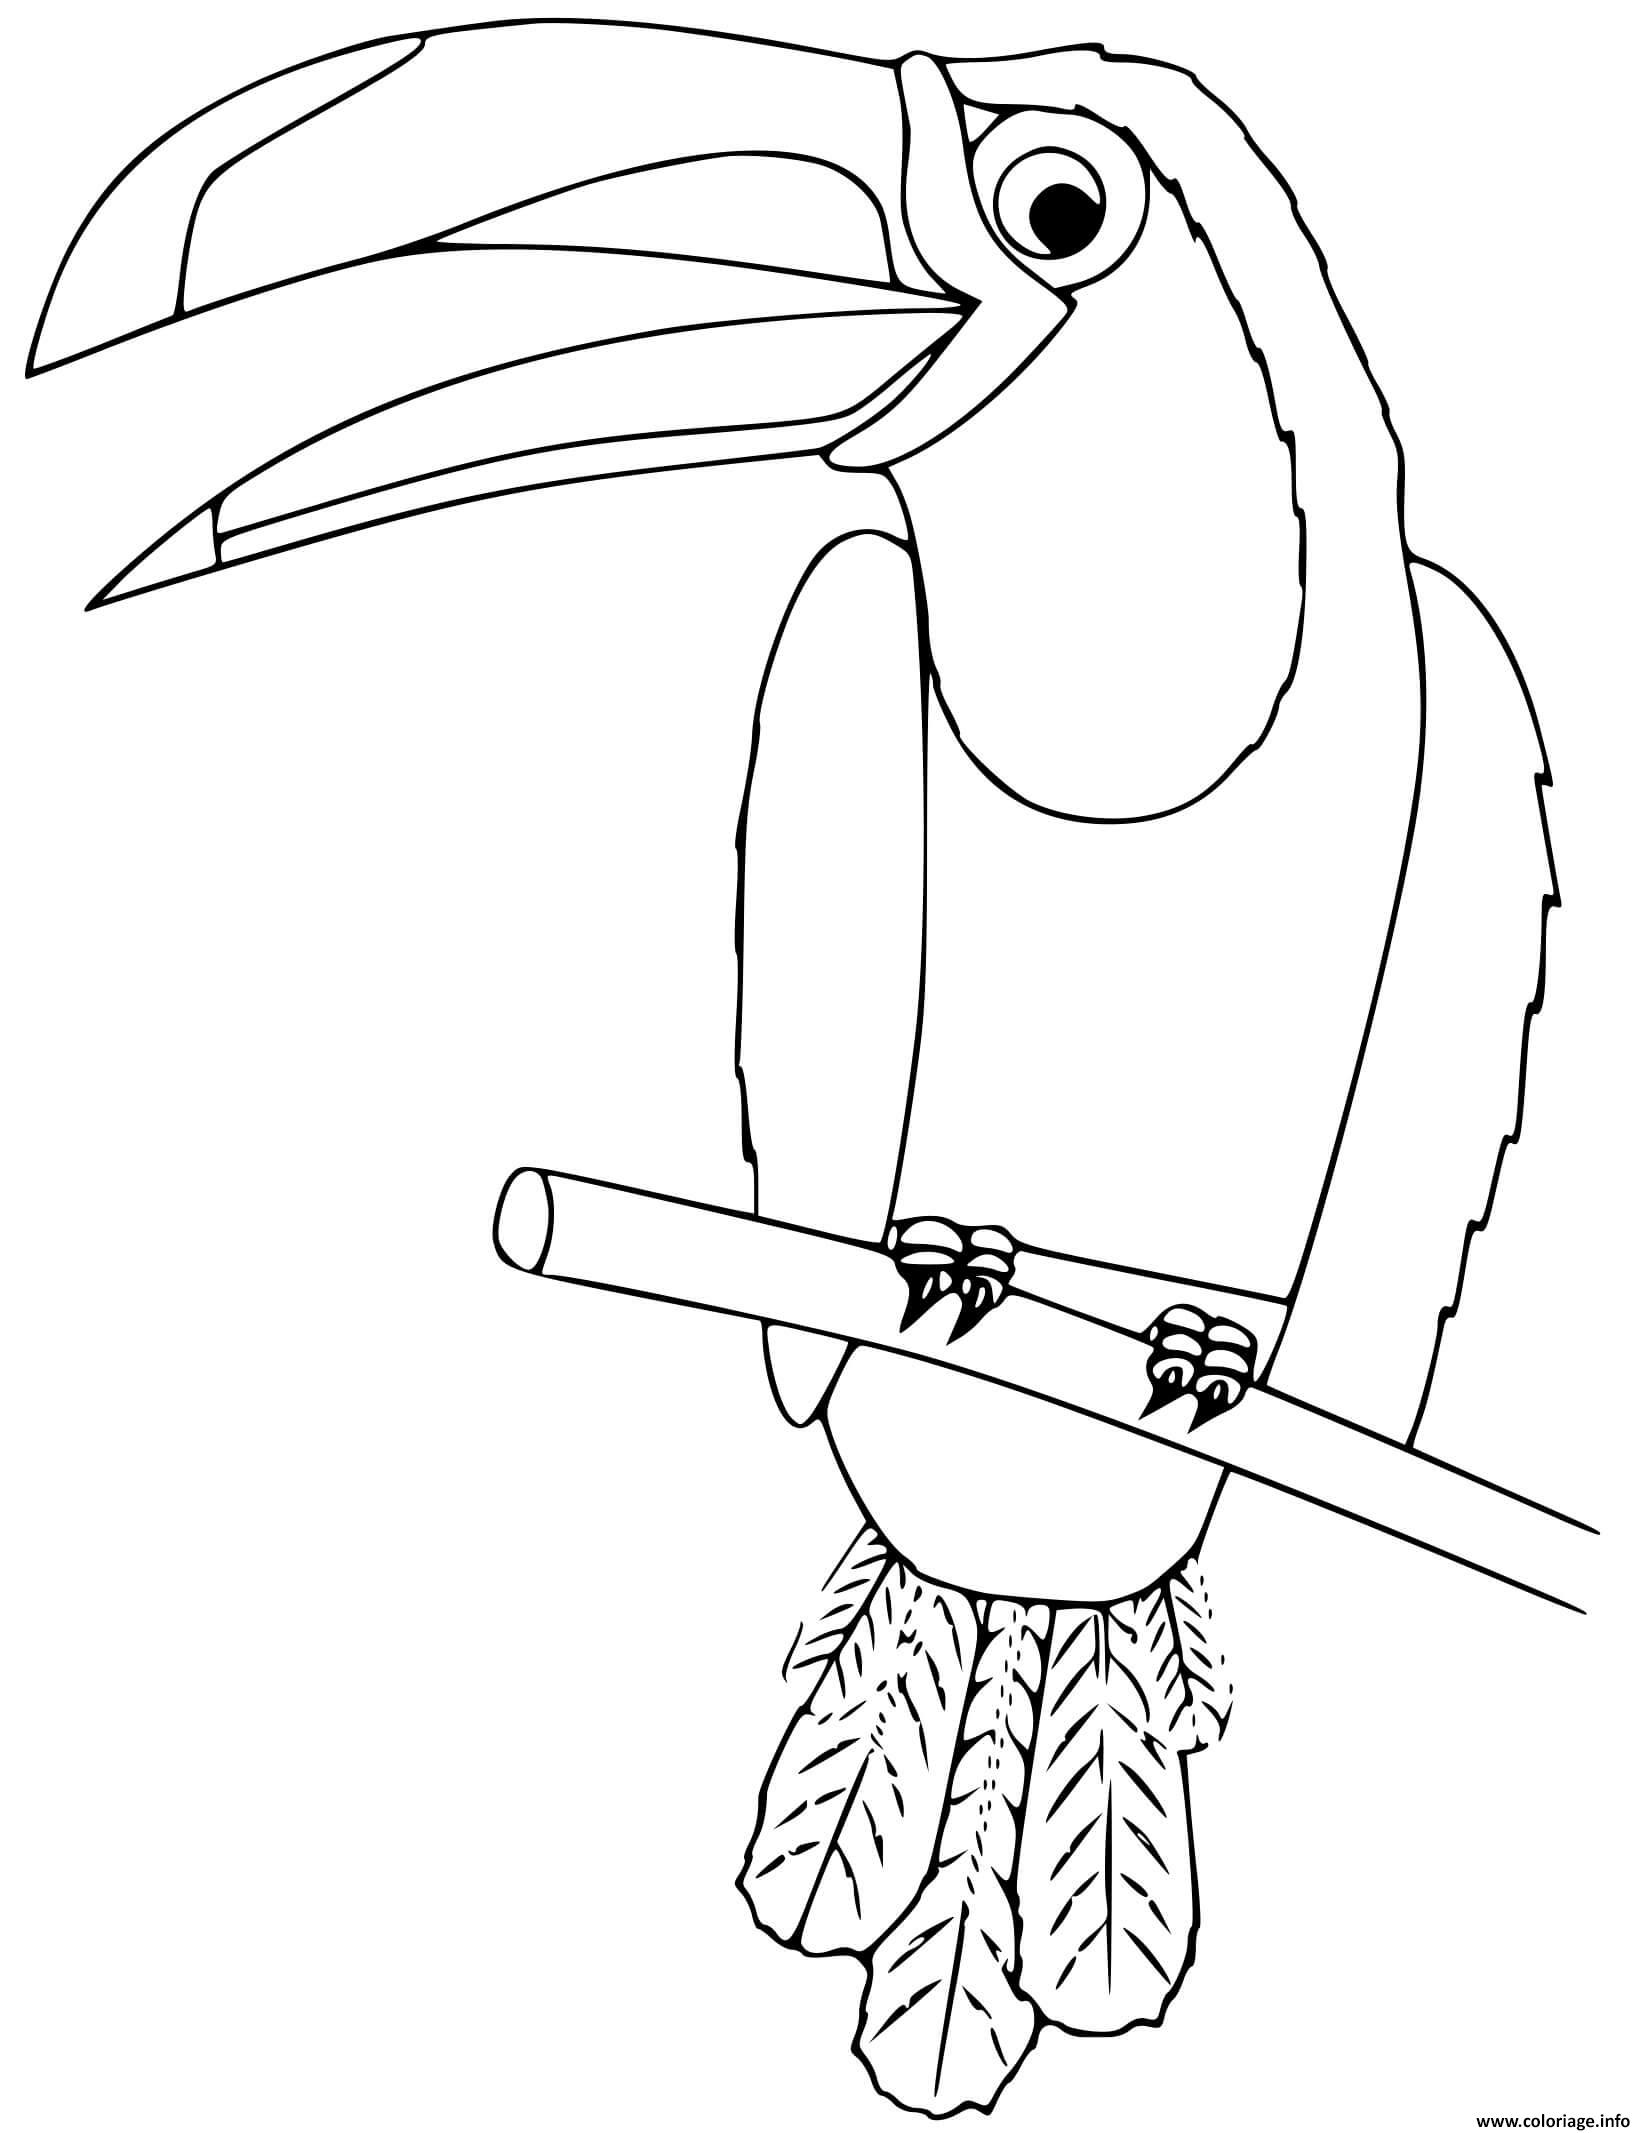 Dessin toucan oiseau du mexique Coloriage Gratuit à Imprimer